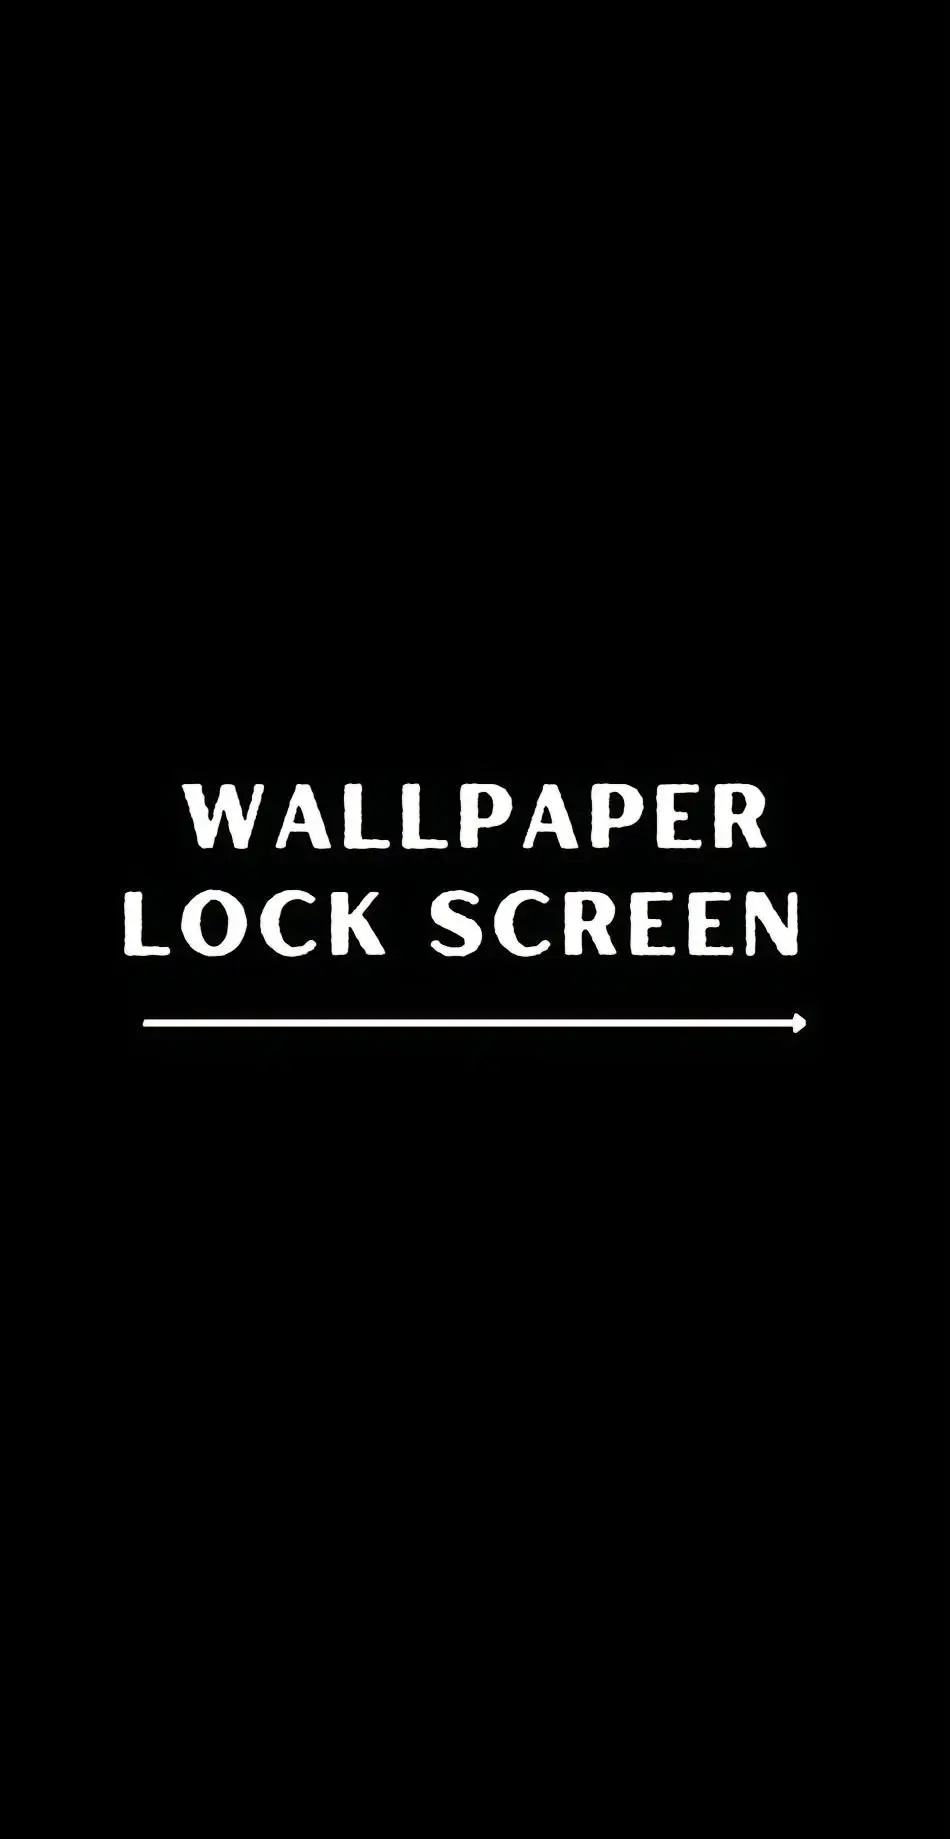 #fypシ #walpaperislamic #lockscreenwallpaper #lockscreen #lockscreenwallpaper #asmaallah #hd #gambarkeren #walpaper #4kwallpaper #4d #iphone #foryoupage #ramadhan #rekomendasi #foryoupage 